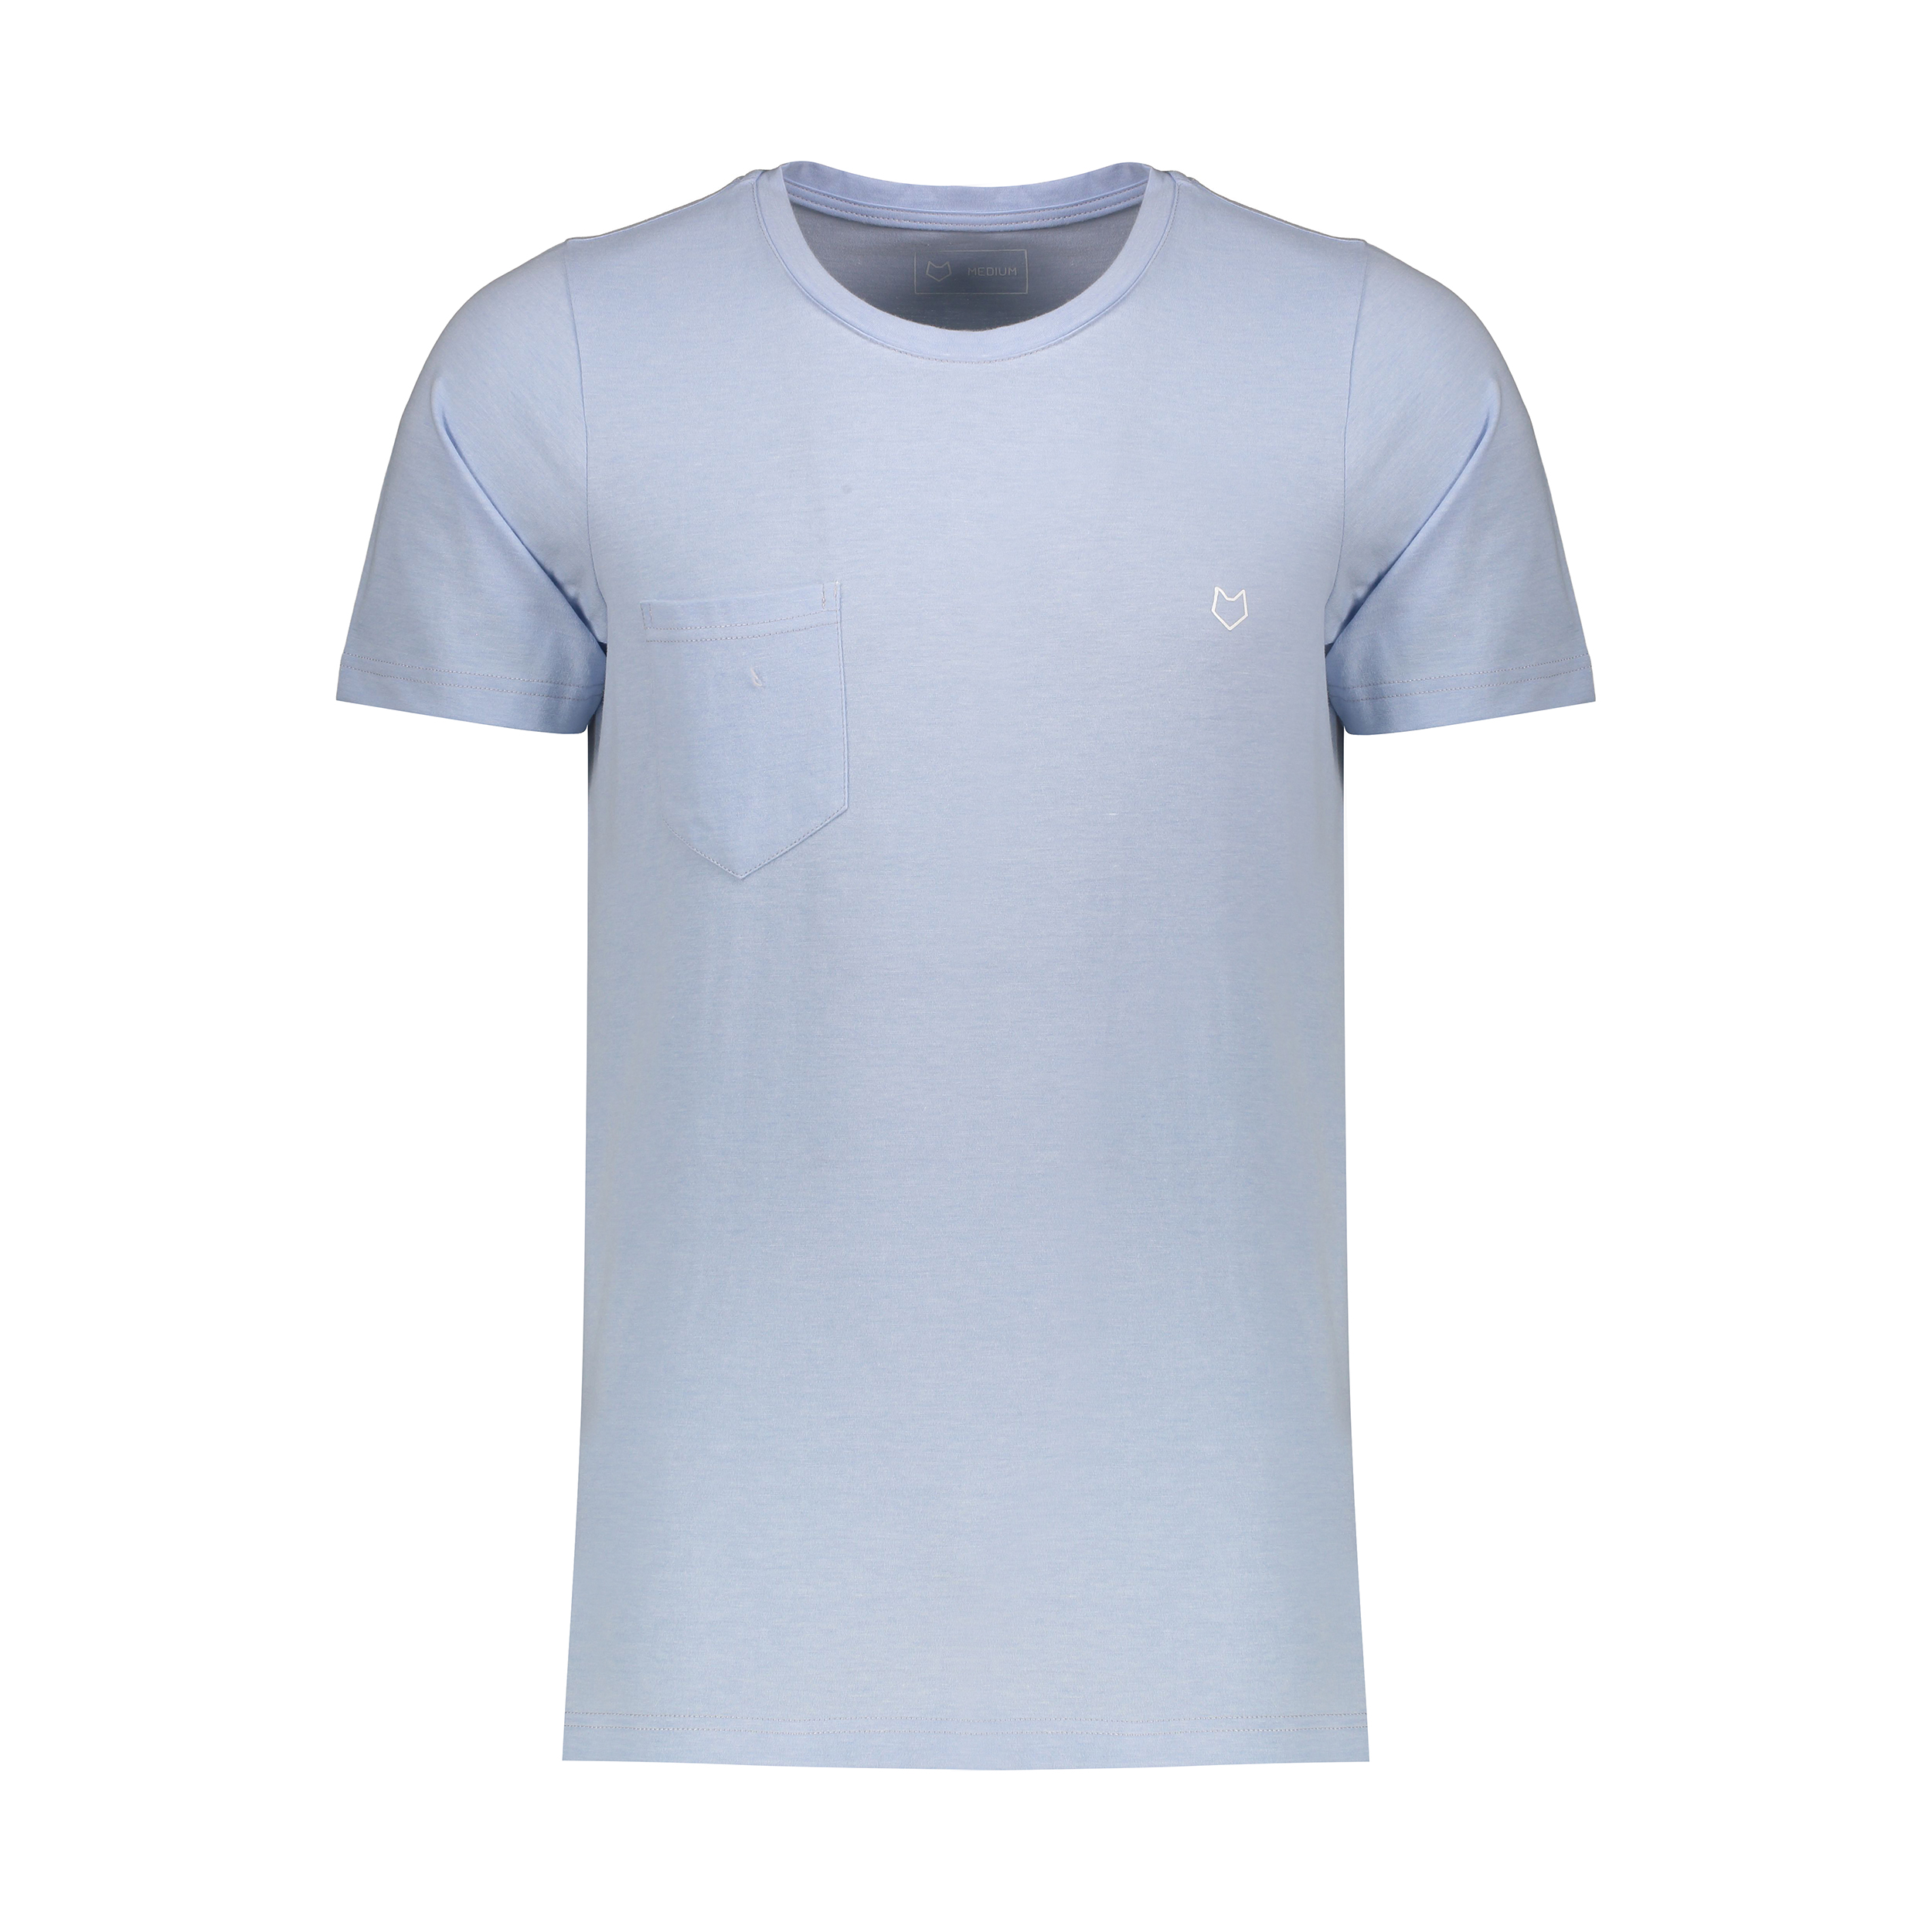 تی شرت آستین کوتاه ورزشی مردانه مل اند موژ مدل M07742-004 -  - 1